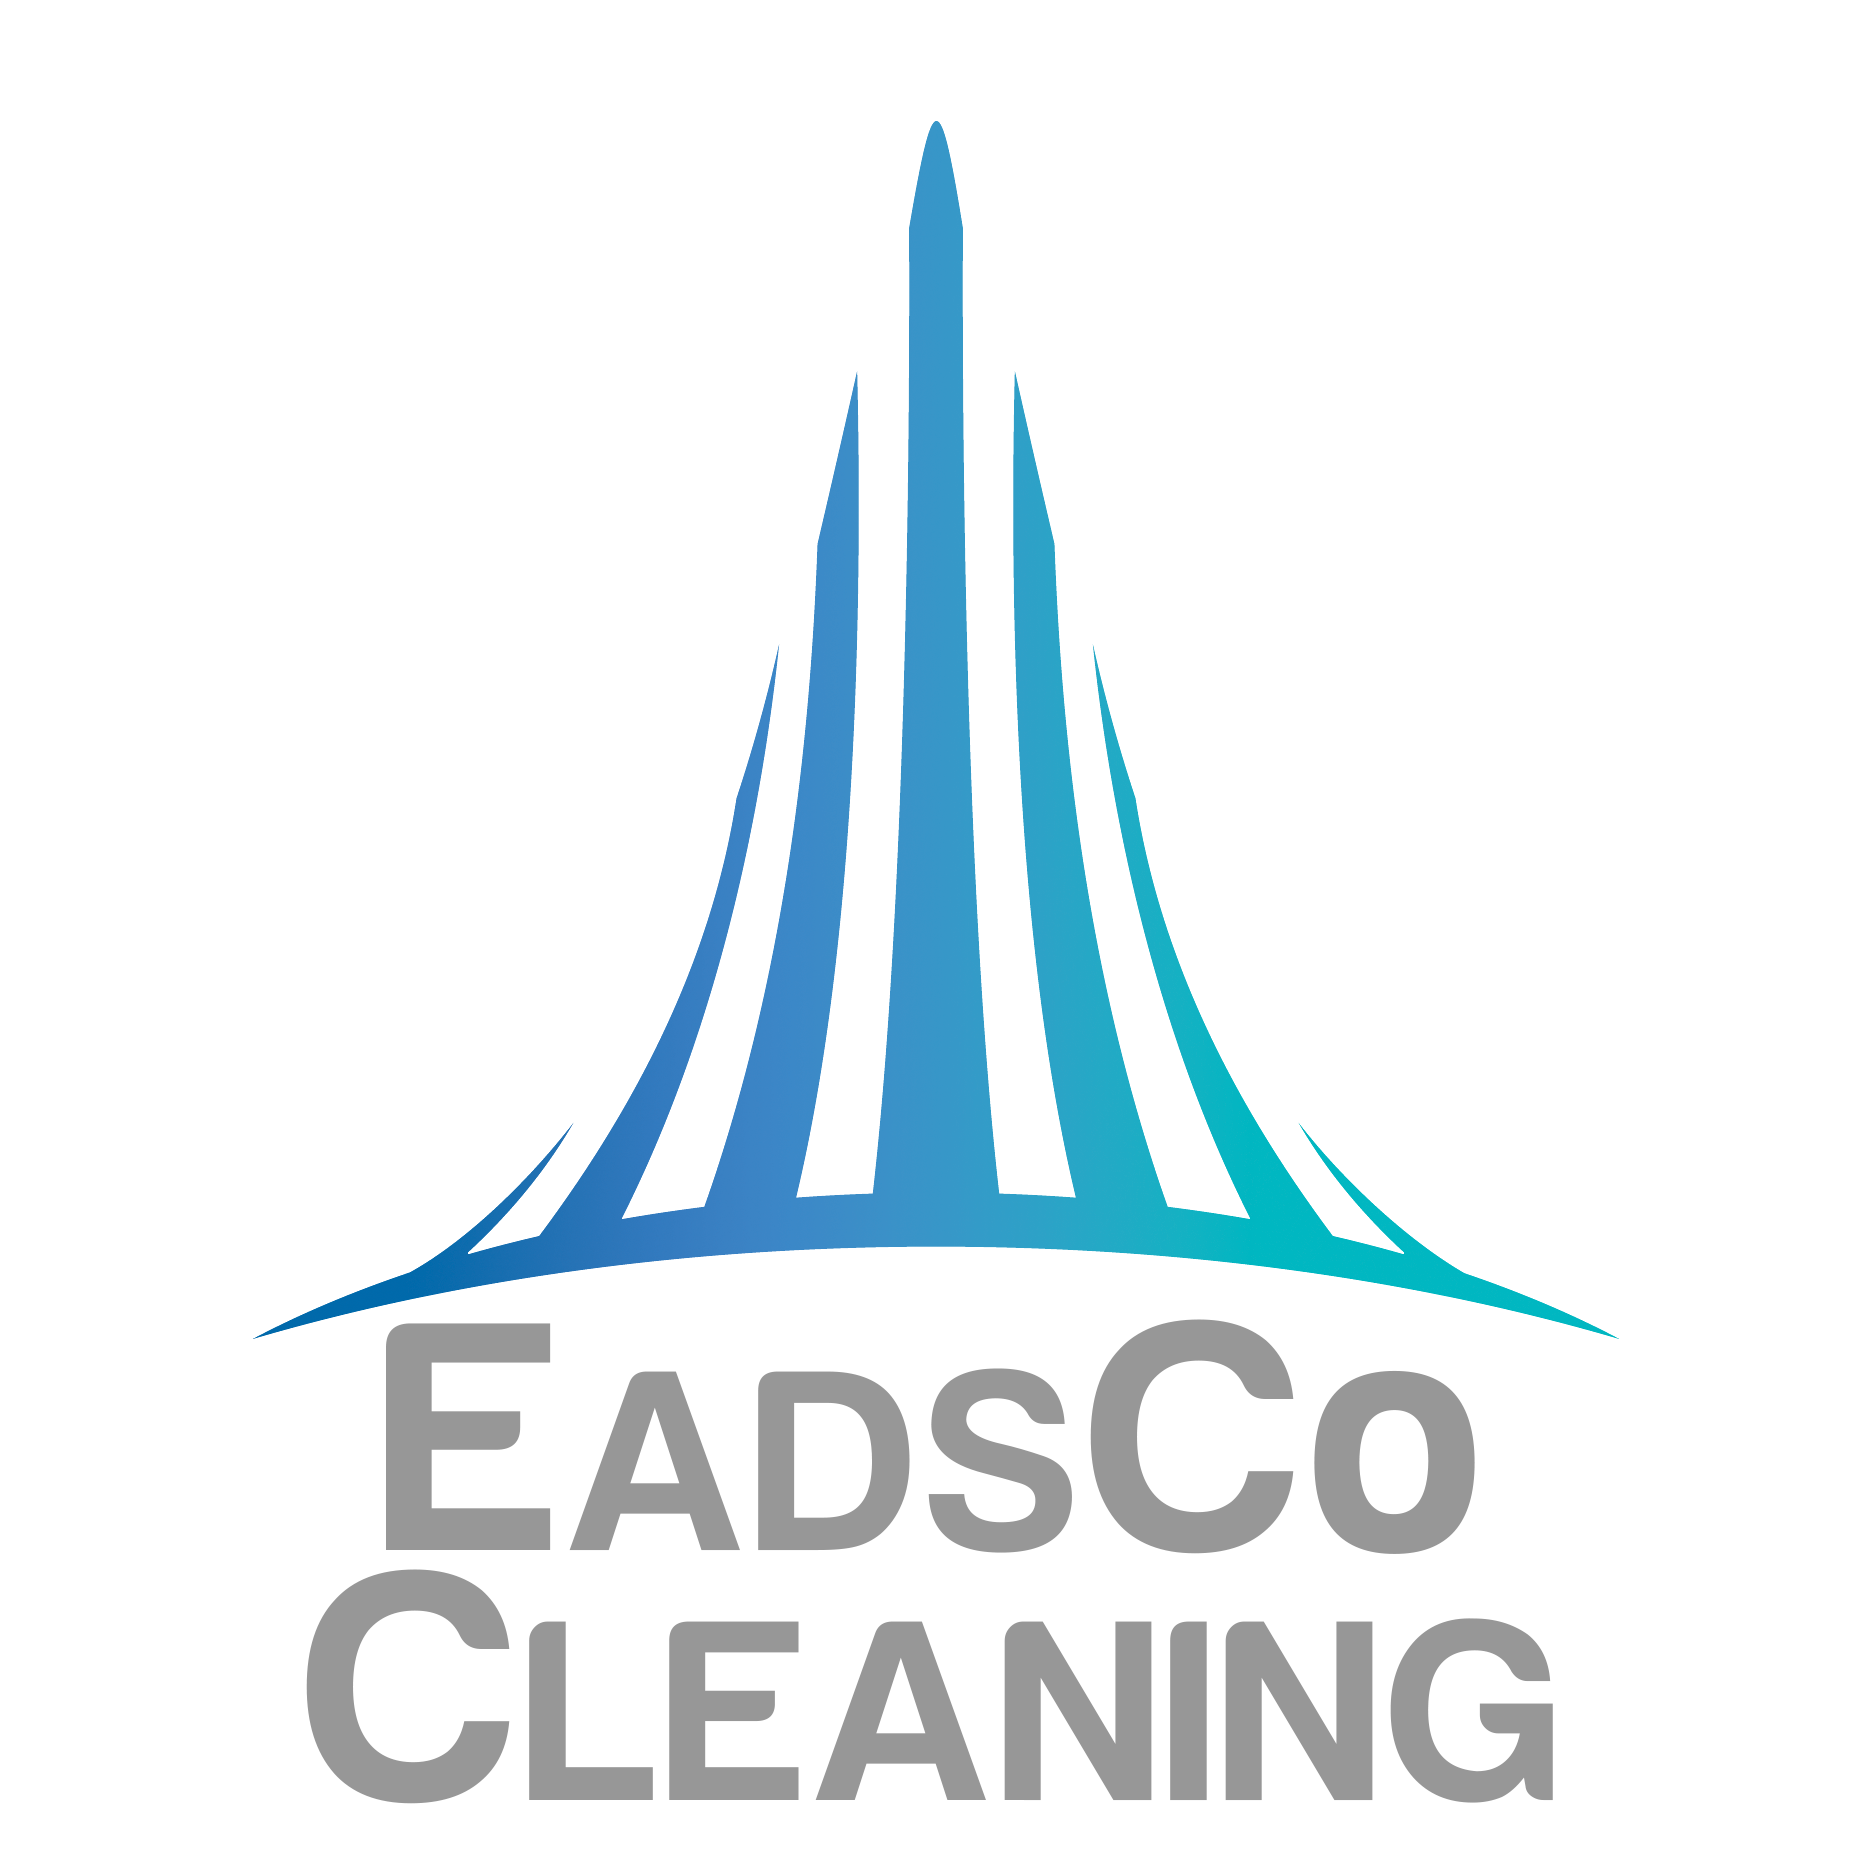 EadsCo Cleaning